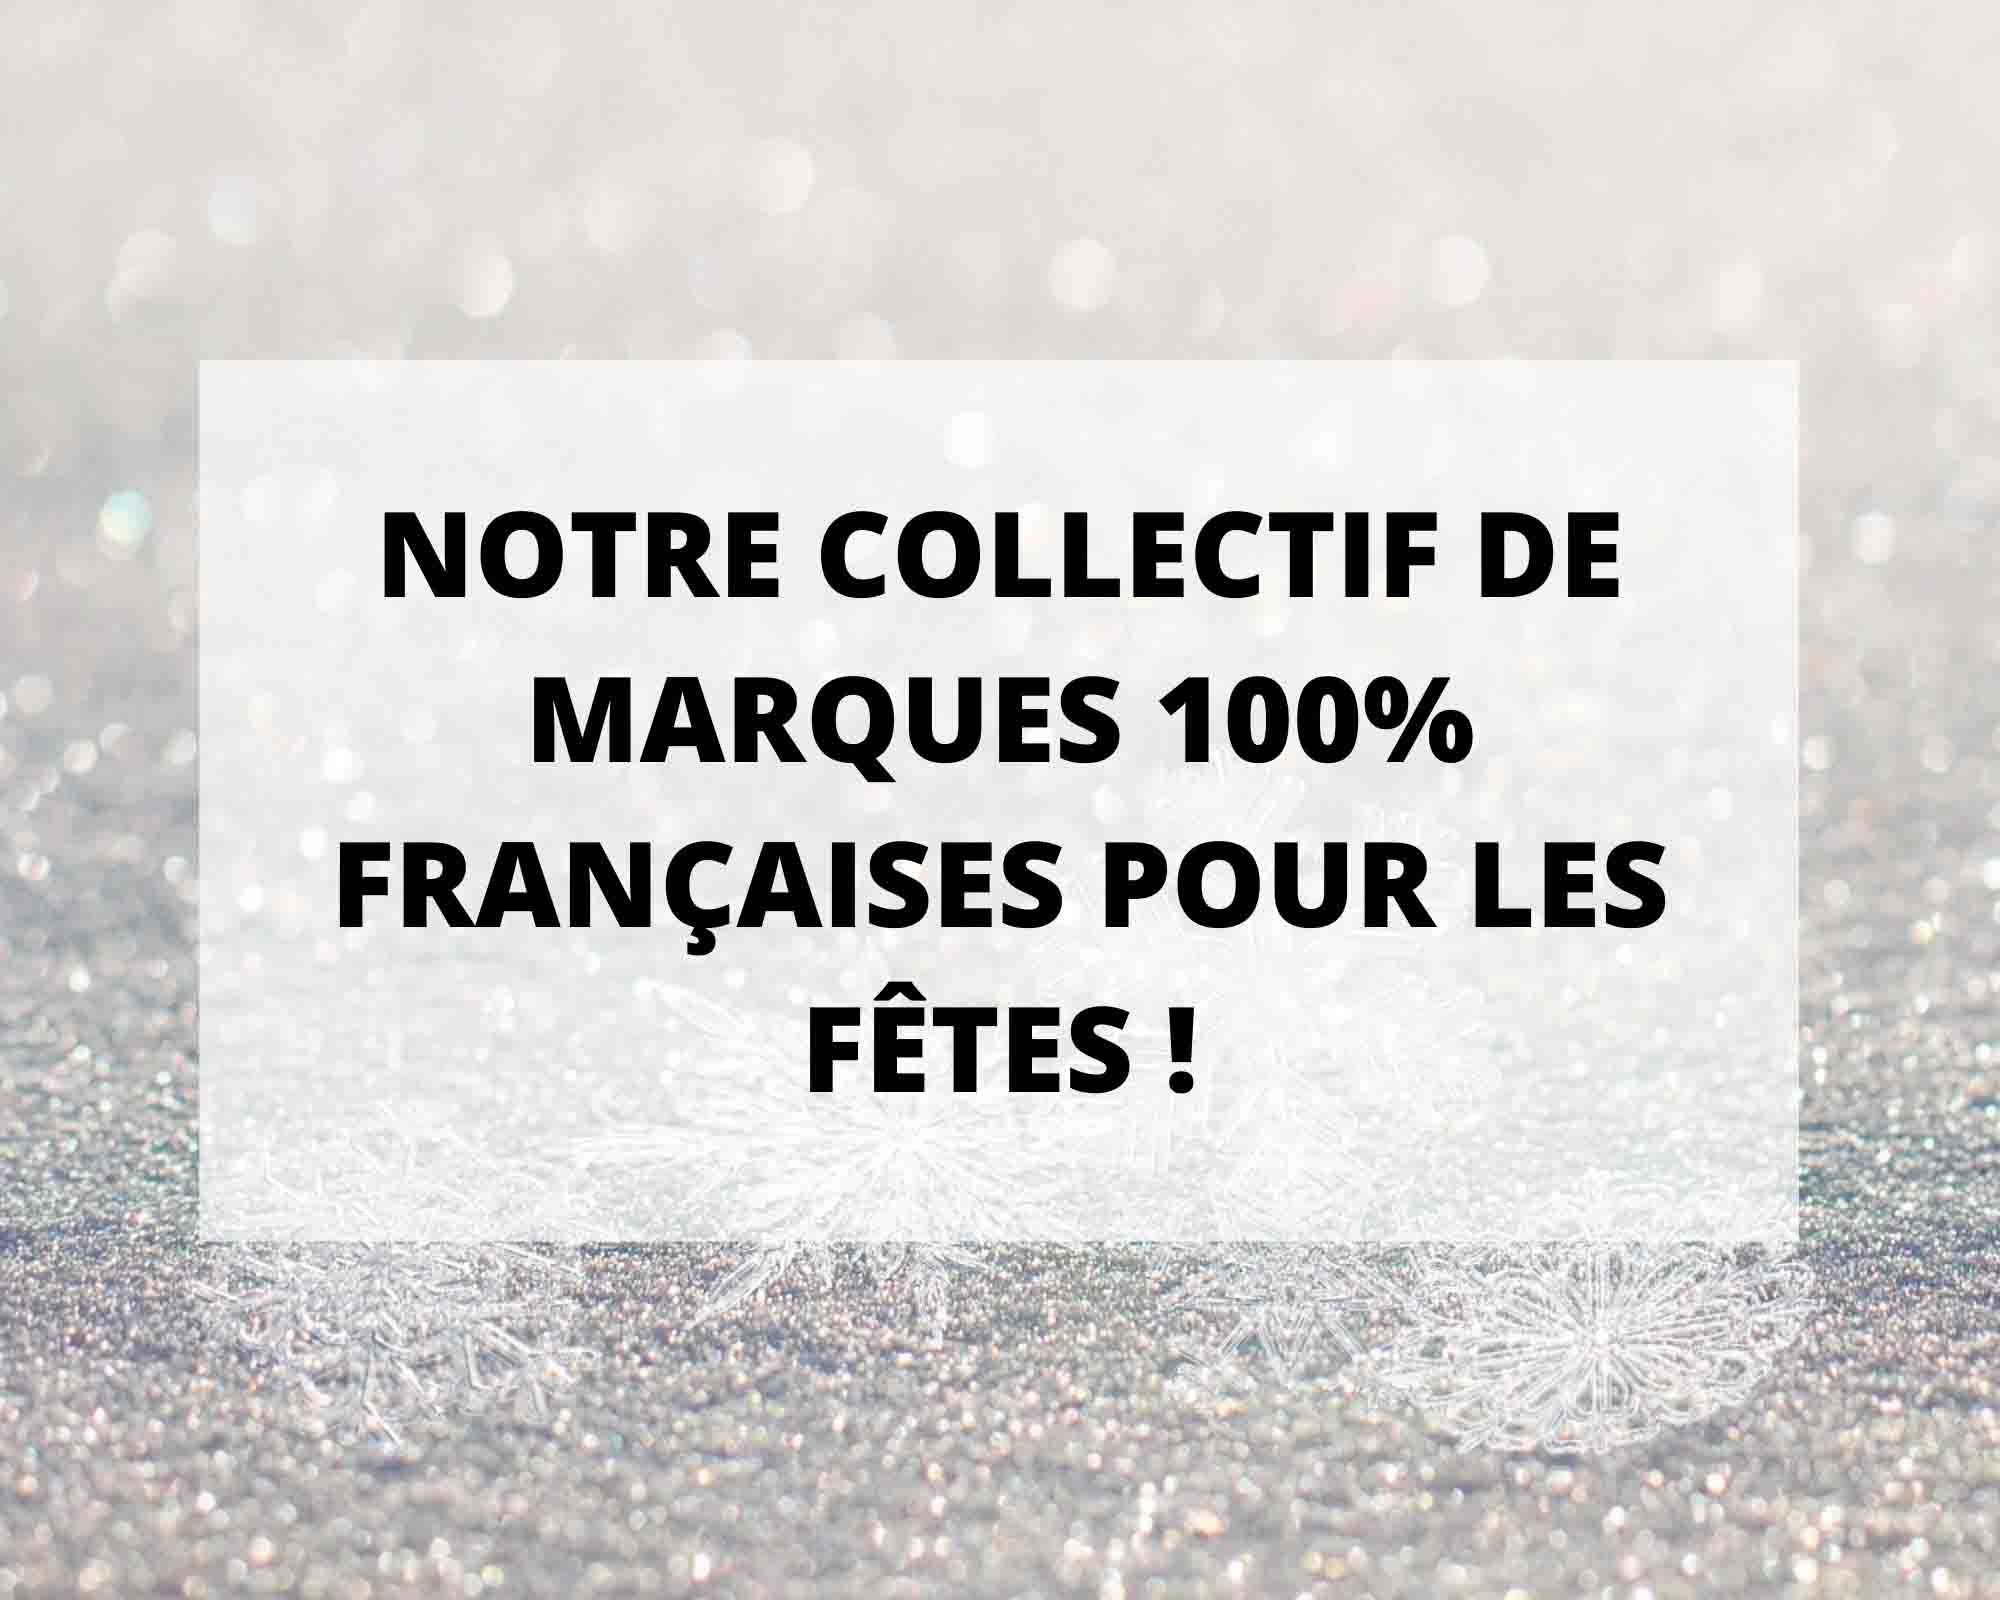 Notre collectif de marques 100% Françaises pour les fêtes !